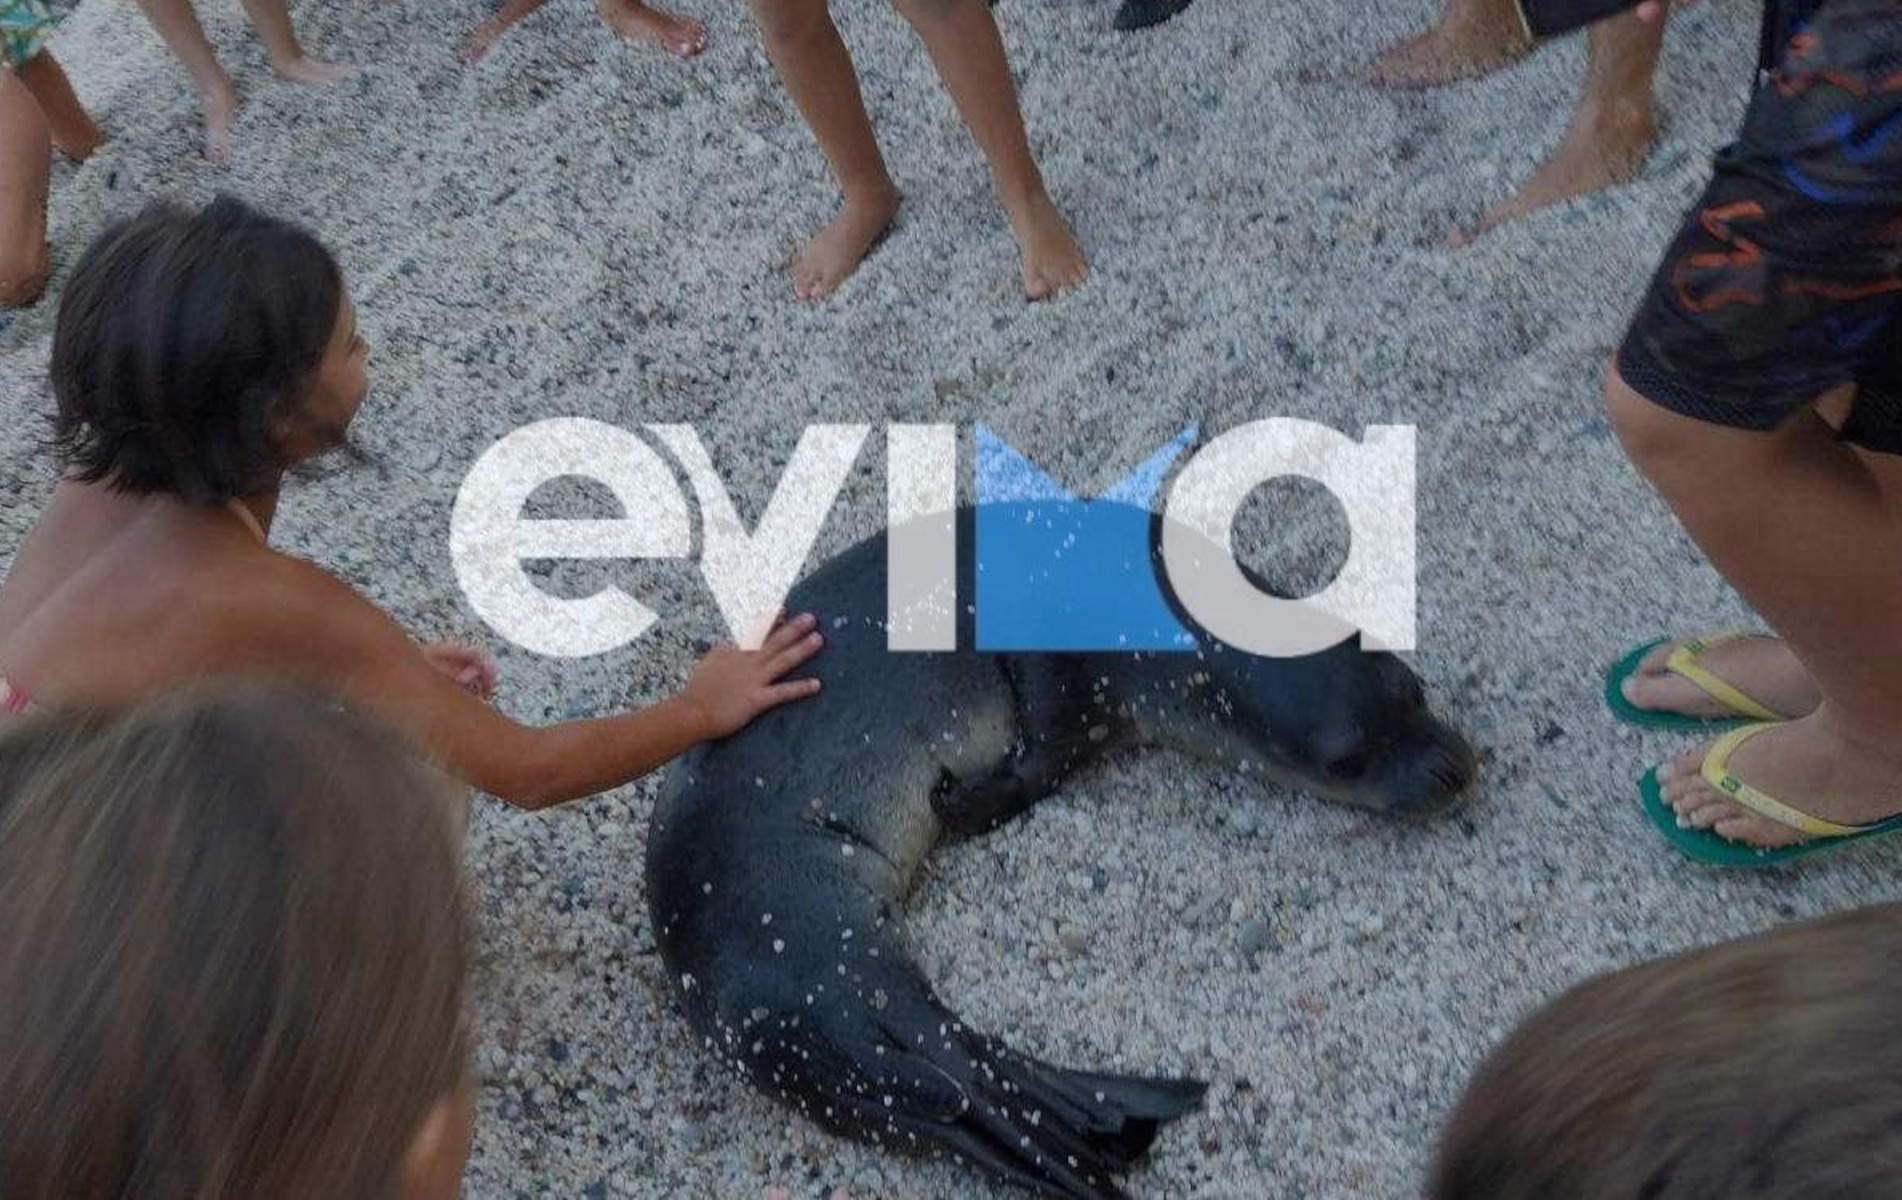 Εύβοια: Φώκια έκλεψε την παράσταση σε παραλία – Βγήκε στην στεριά και έπαιξε με τους ανθρώπους